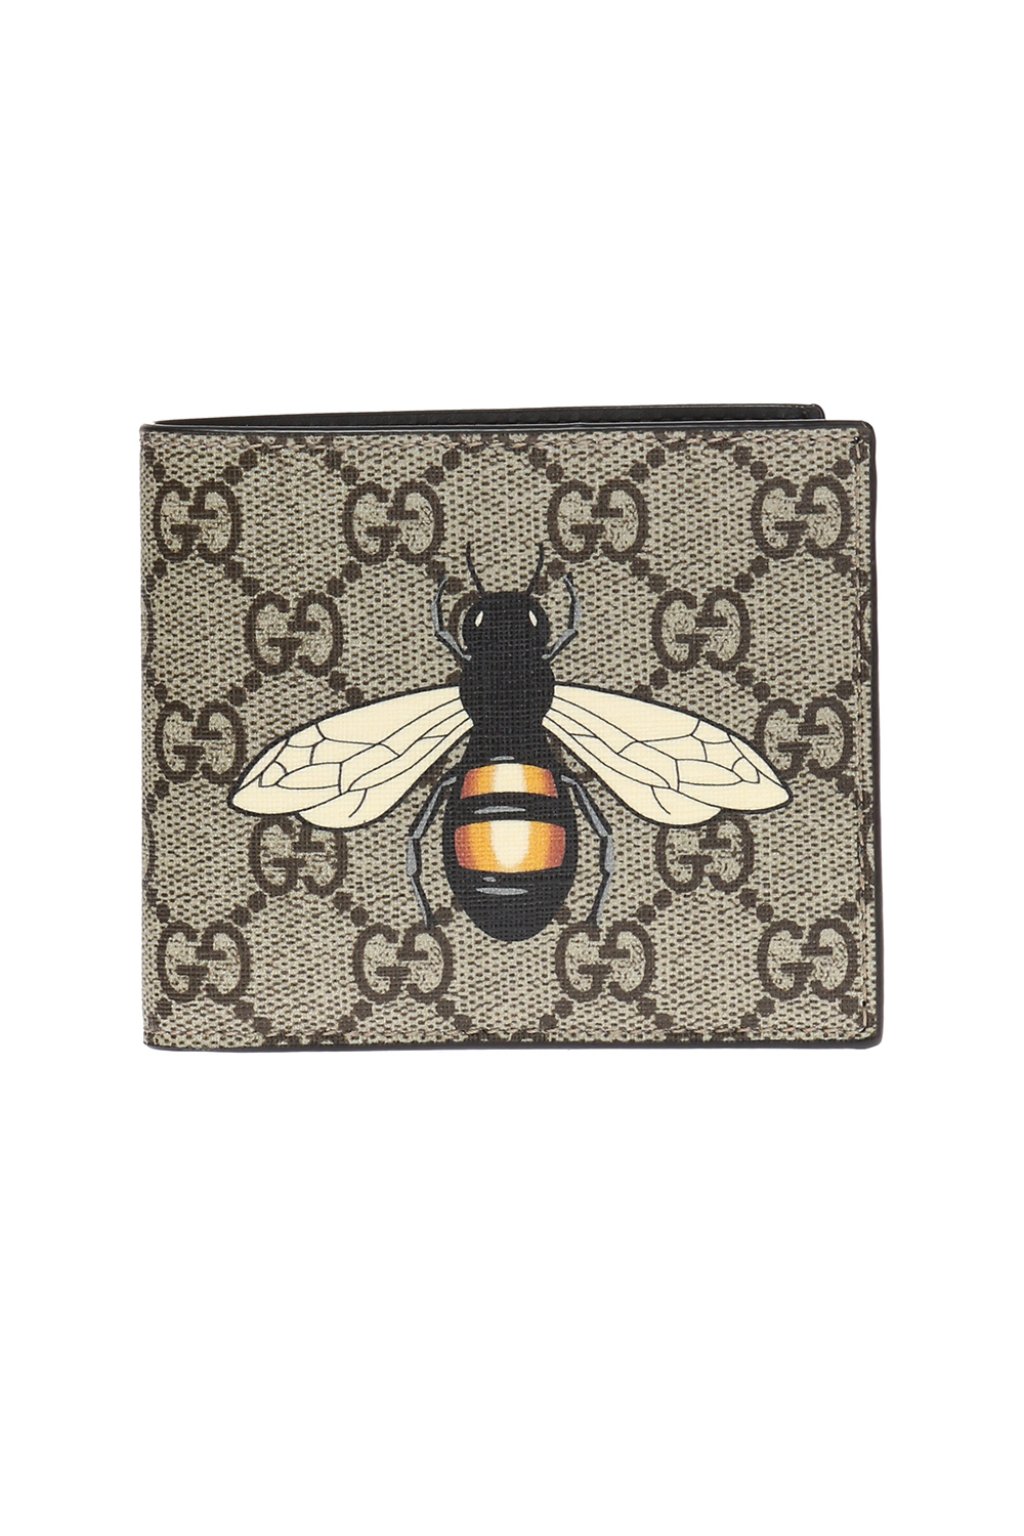 gucci wallet bee black